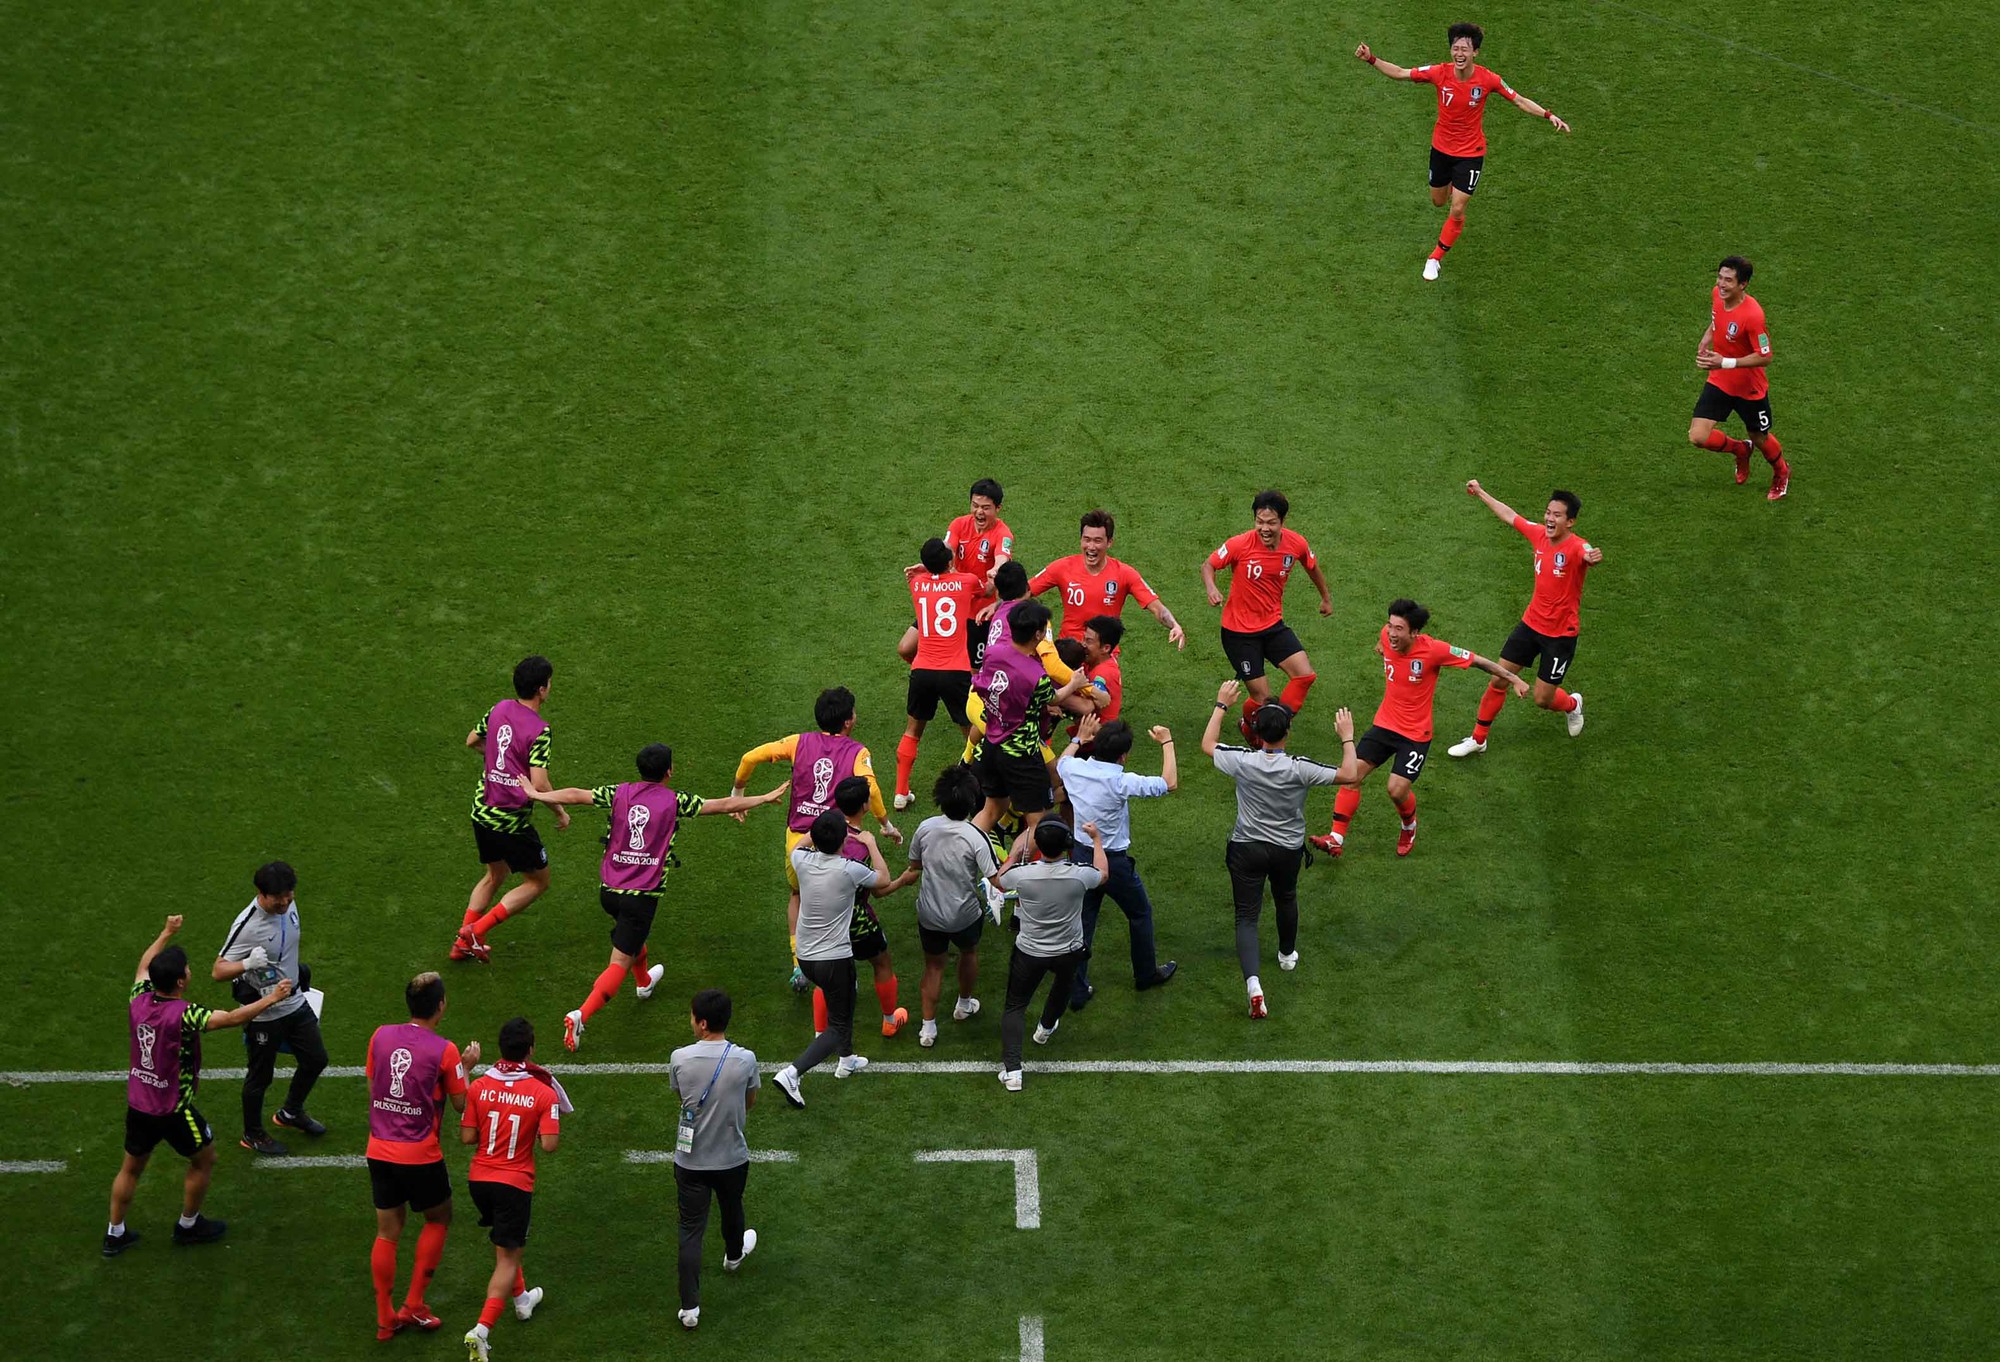 Cầu thủ Hàn Quốc bật khóc, vỡ òa sau chiến tích loại nhà vô địch Đức - Ảnh 2.